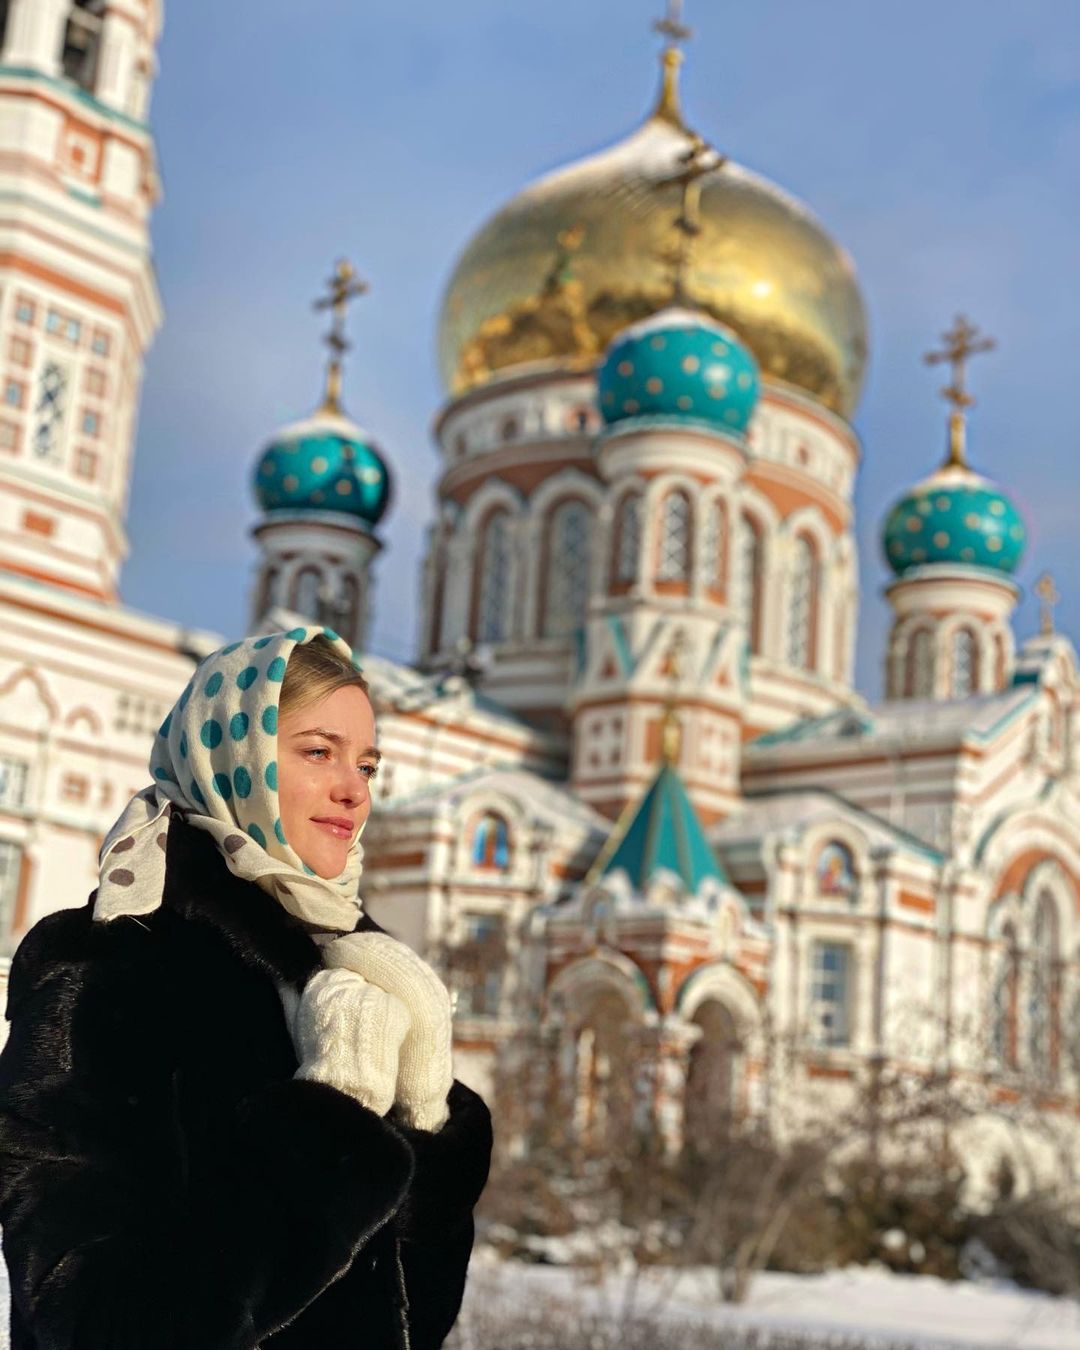 俄罗斯超模生活图片分享-弗拉达·洛丝亚珂娃 Vlada Roslyakova